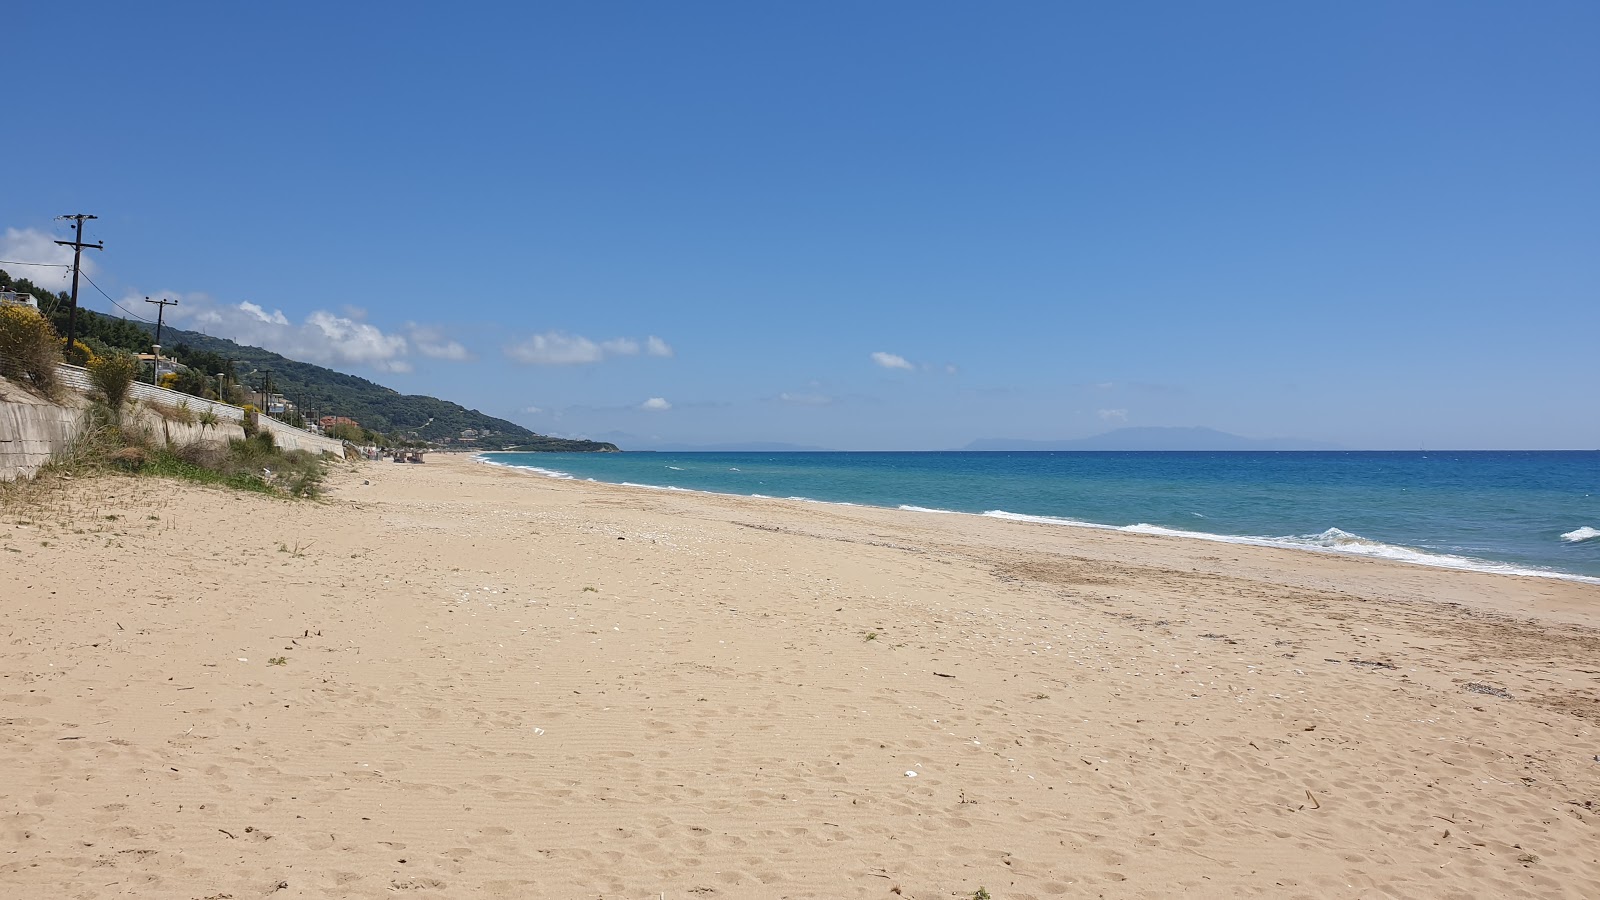 loutsas beach'in fotoğrafı - rahatlamayı sevenler arasında popüler bir yer